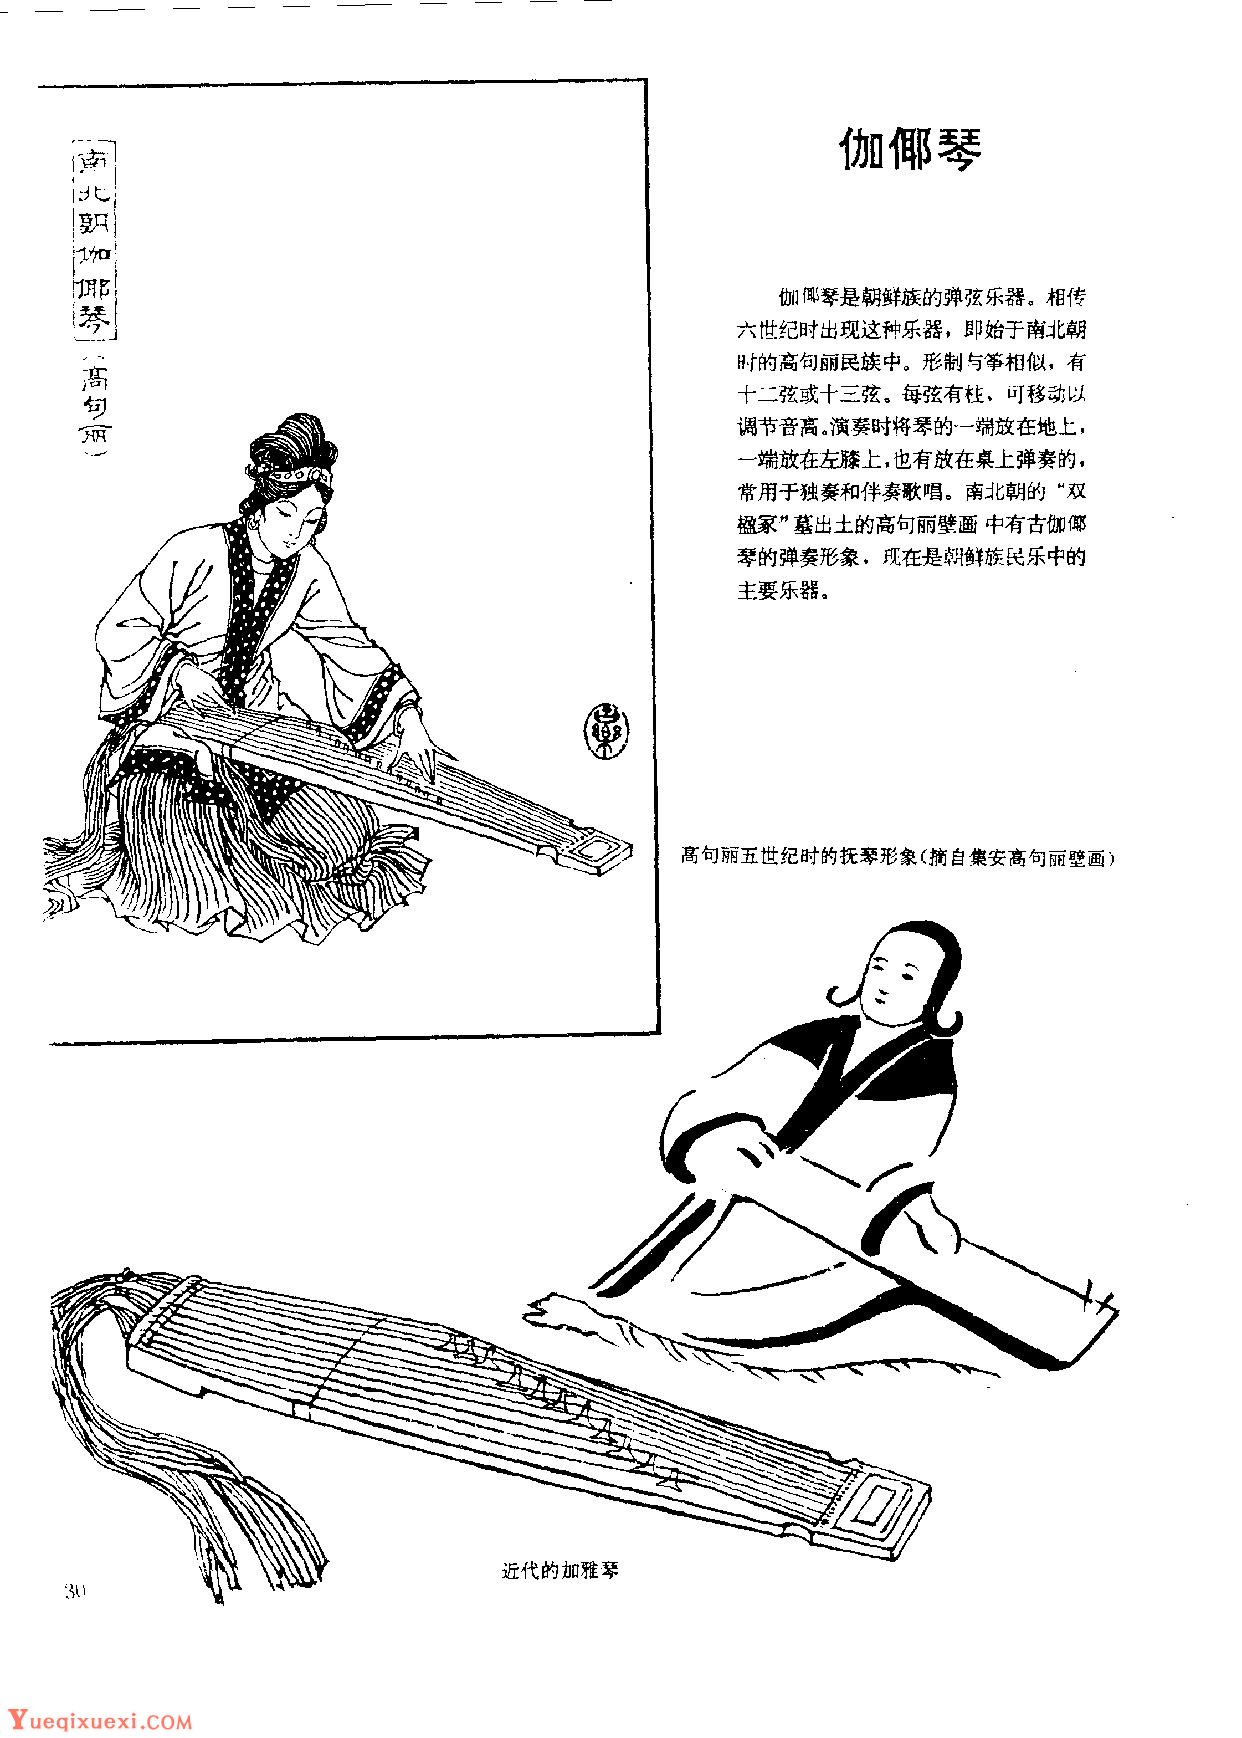 中国古代乐器《伽倻琴》